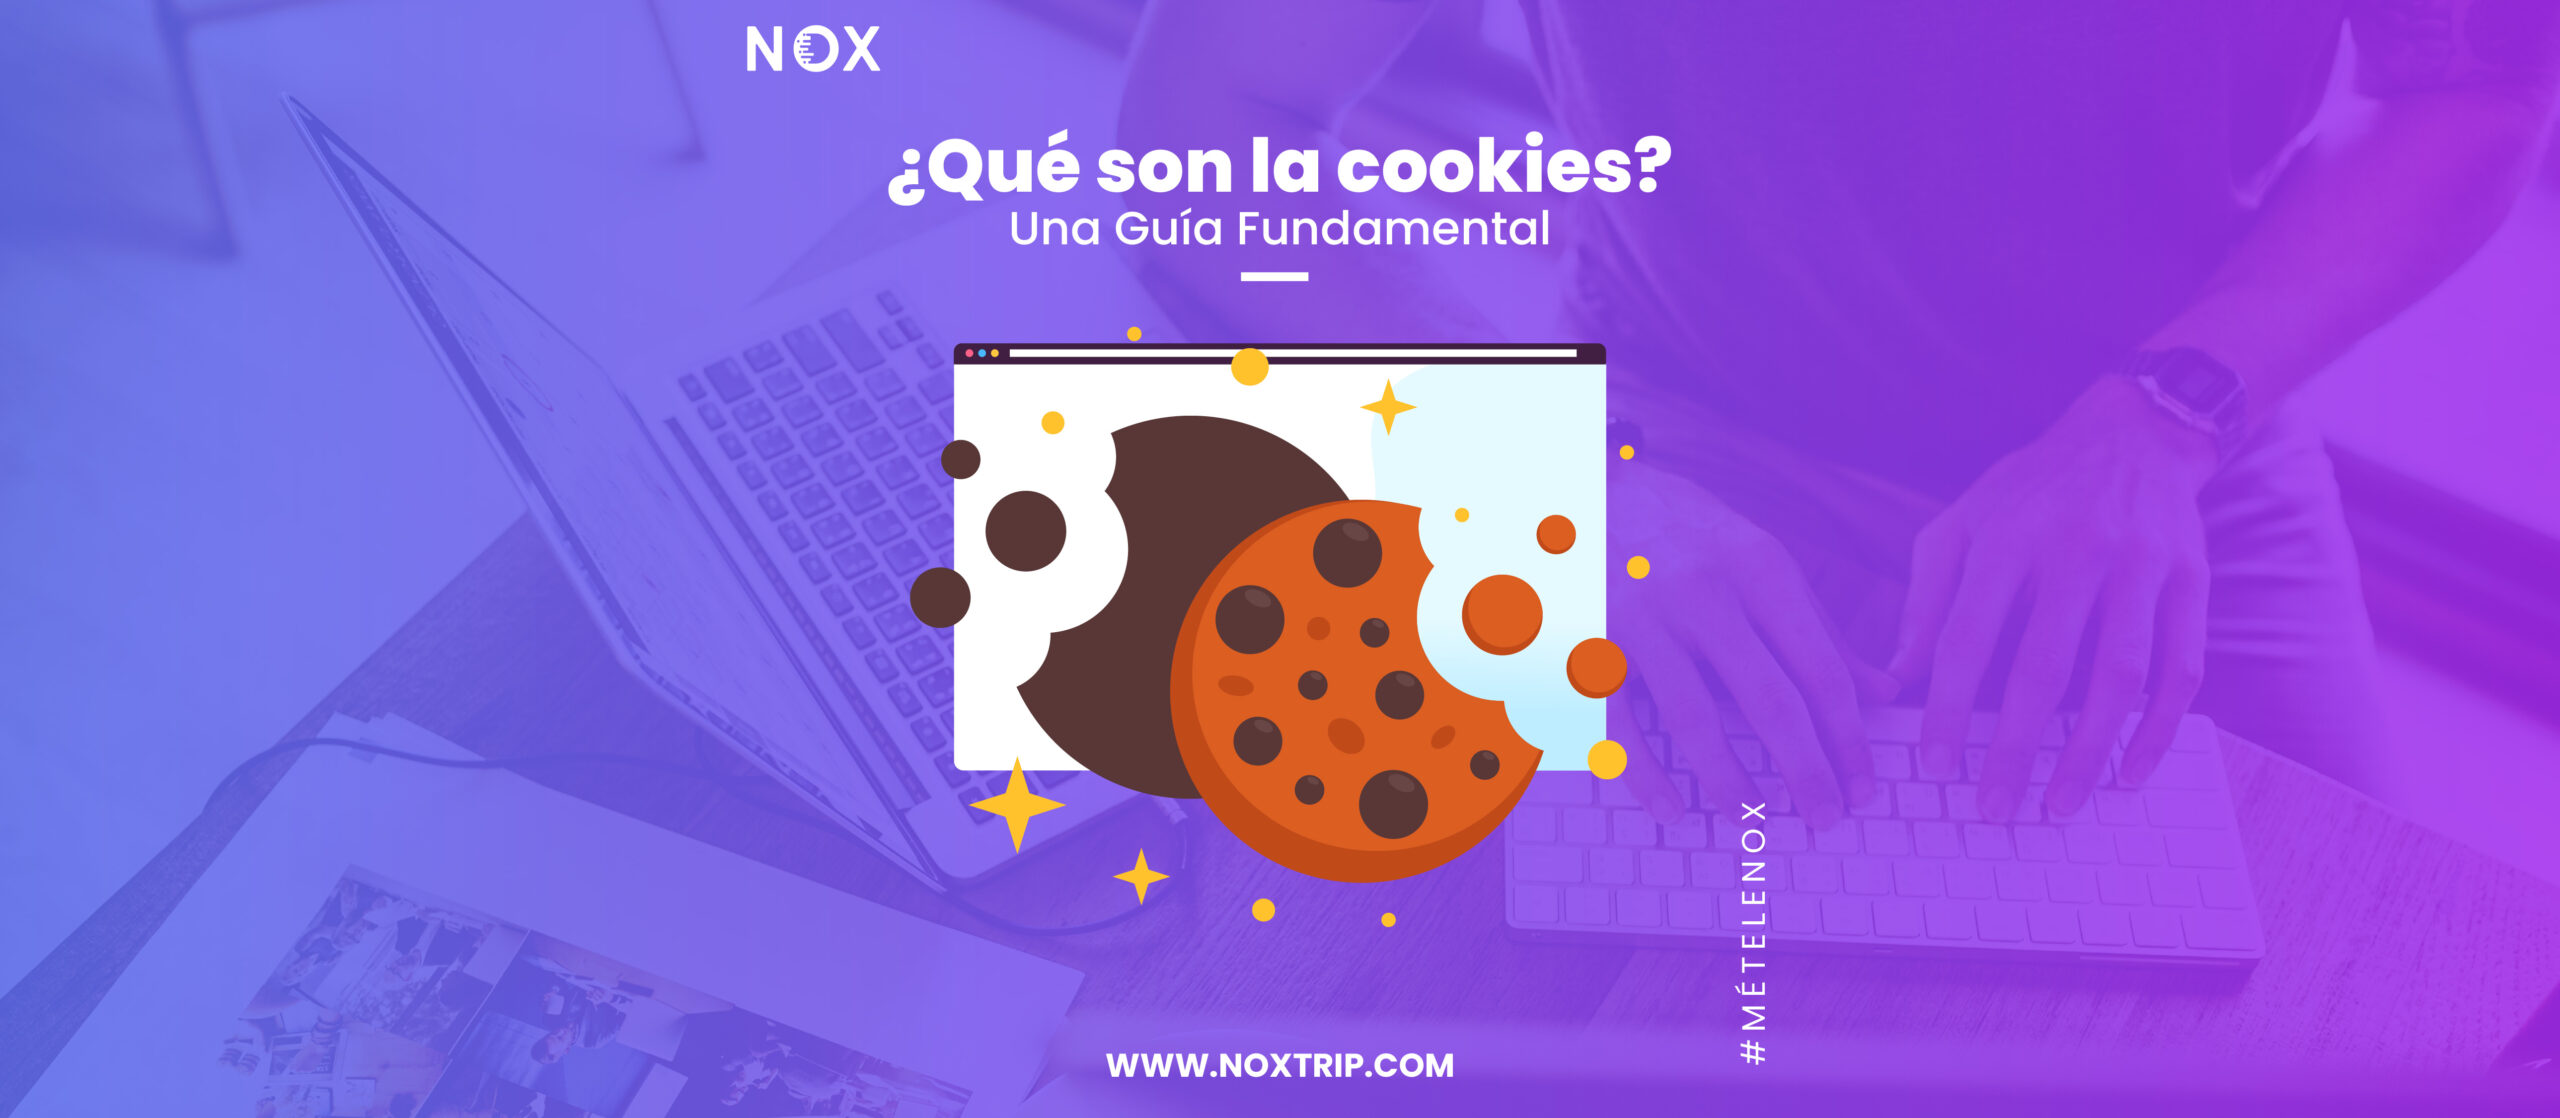 NOX Marketing Digital, Que son las cokies